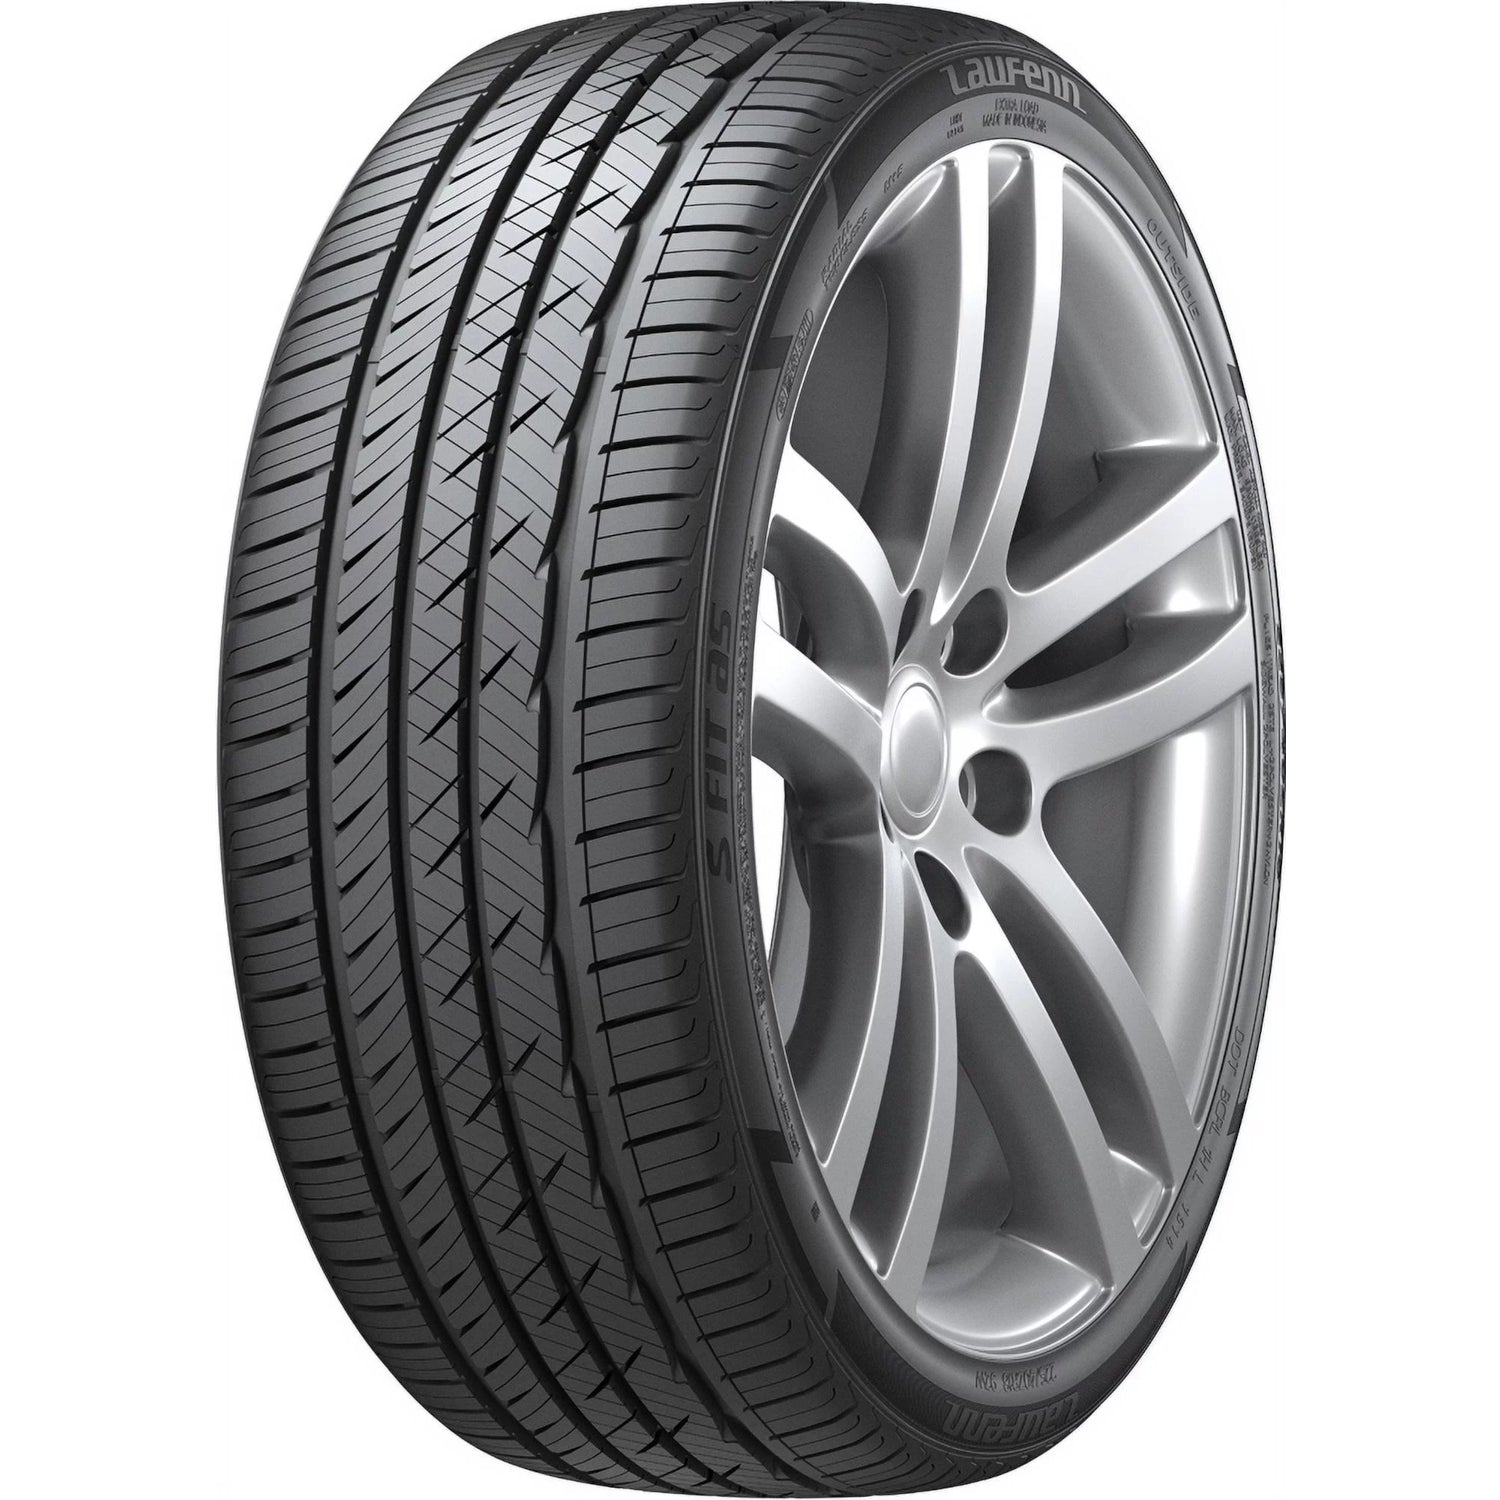 LAUFENN S FIT AS 235/55ZR18 (28.2X9.3R 18) Tires